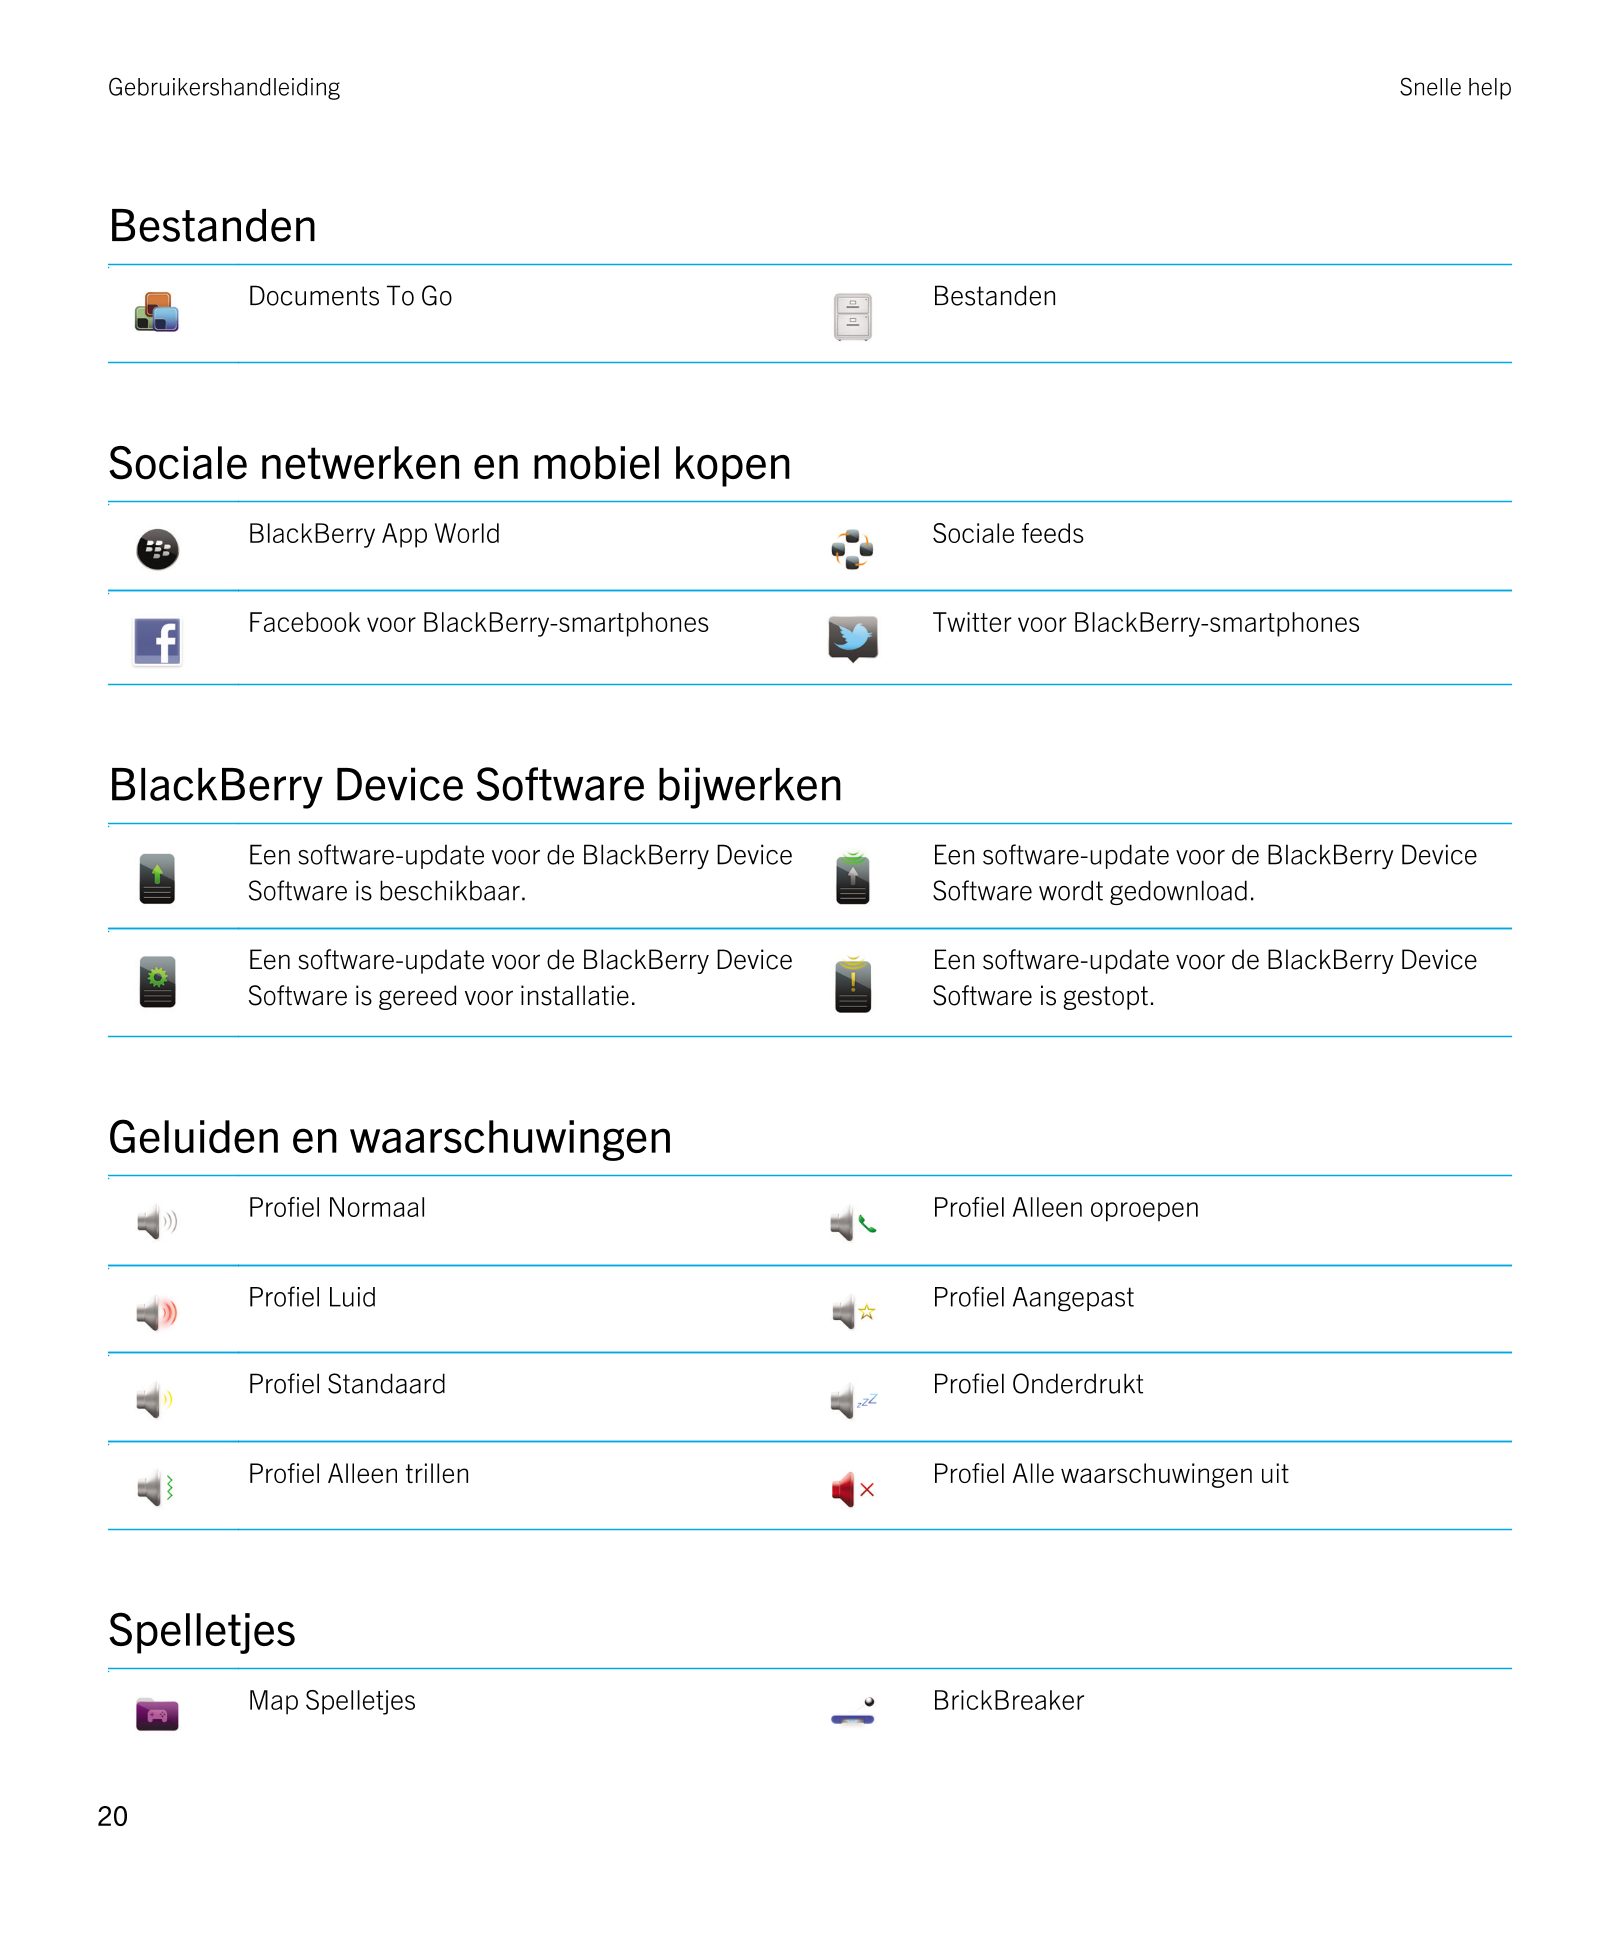 Gebruikershandleiding Snelle help
Bestanden 
Documents To Go   Bestanden
Sociale netwerken en mobiel kopen 
  BlackBerry App Wor